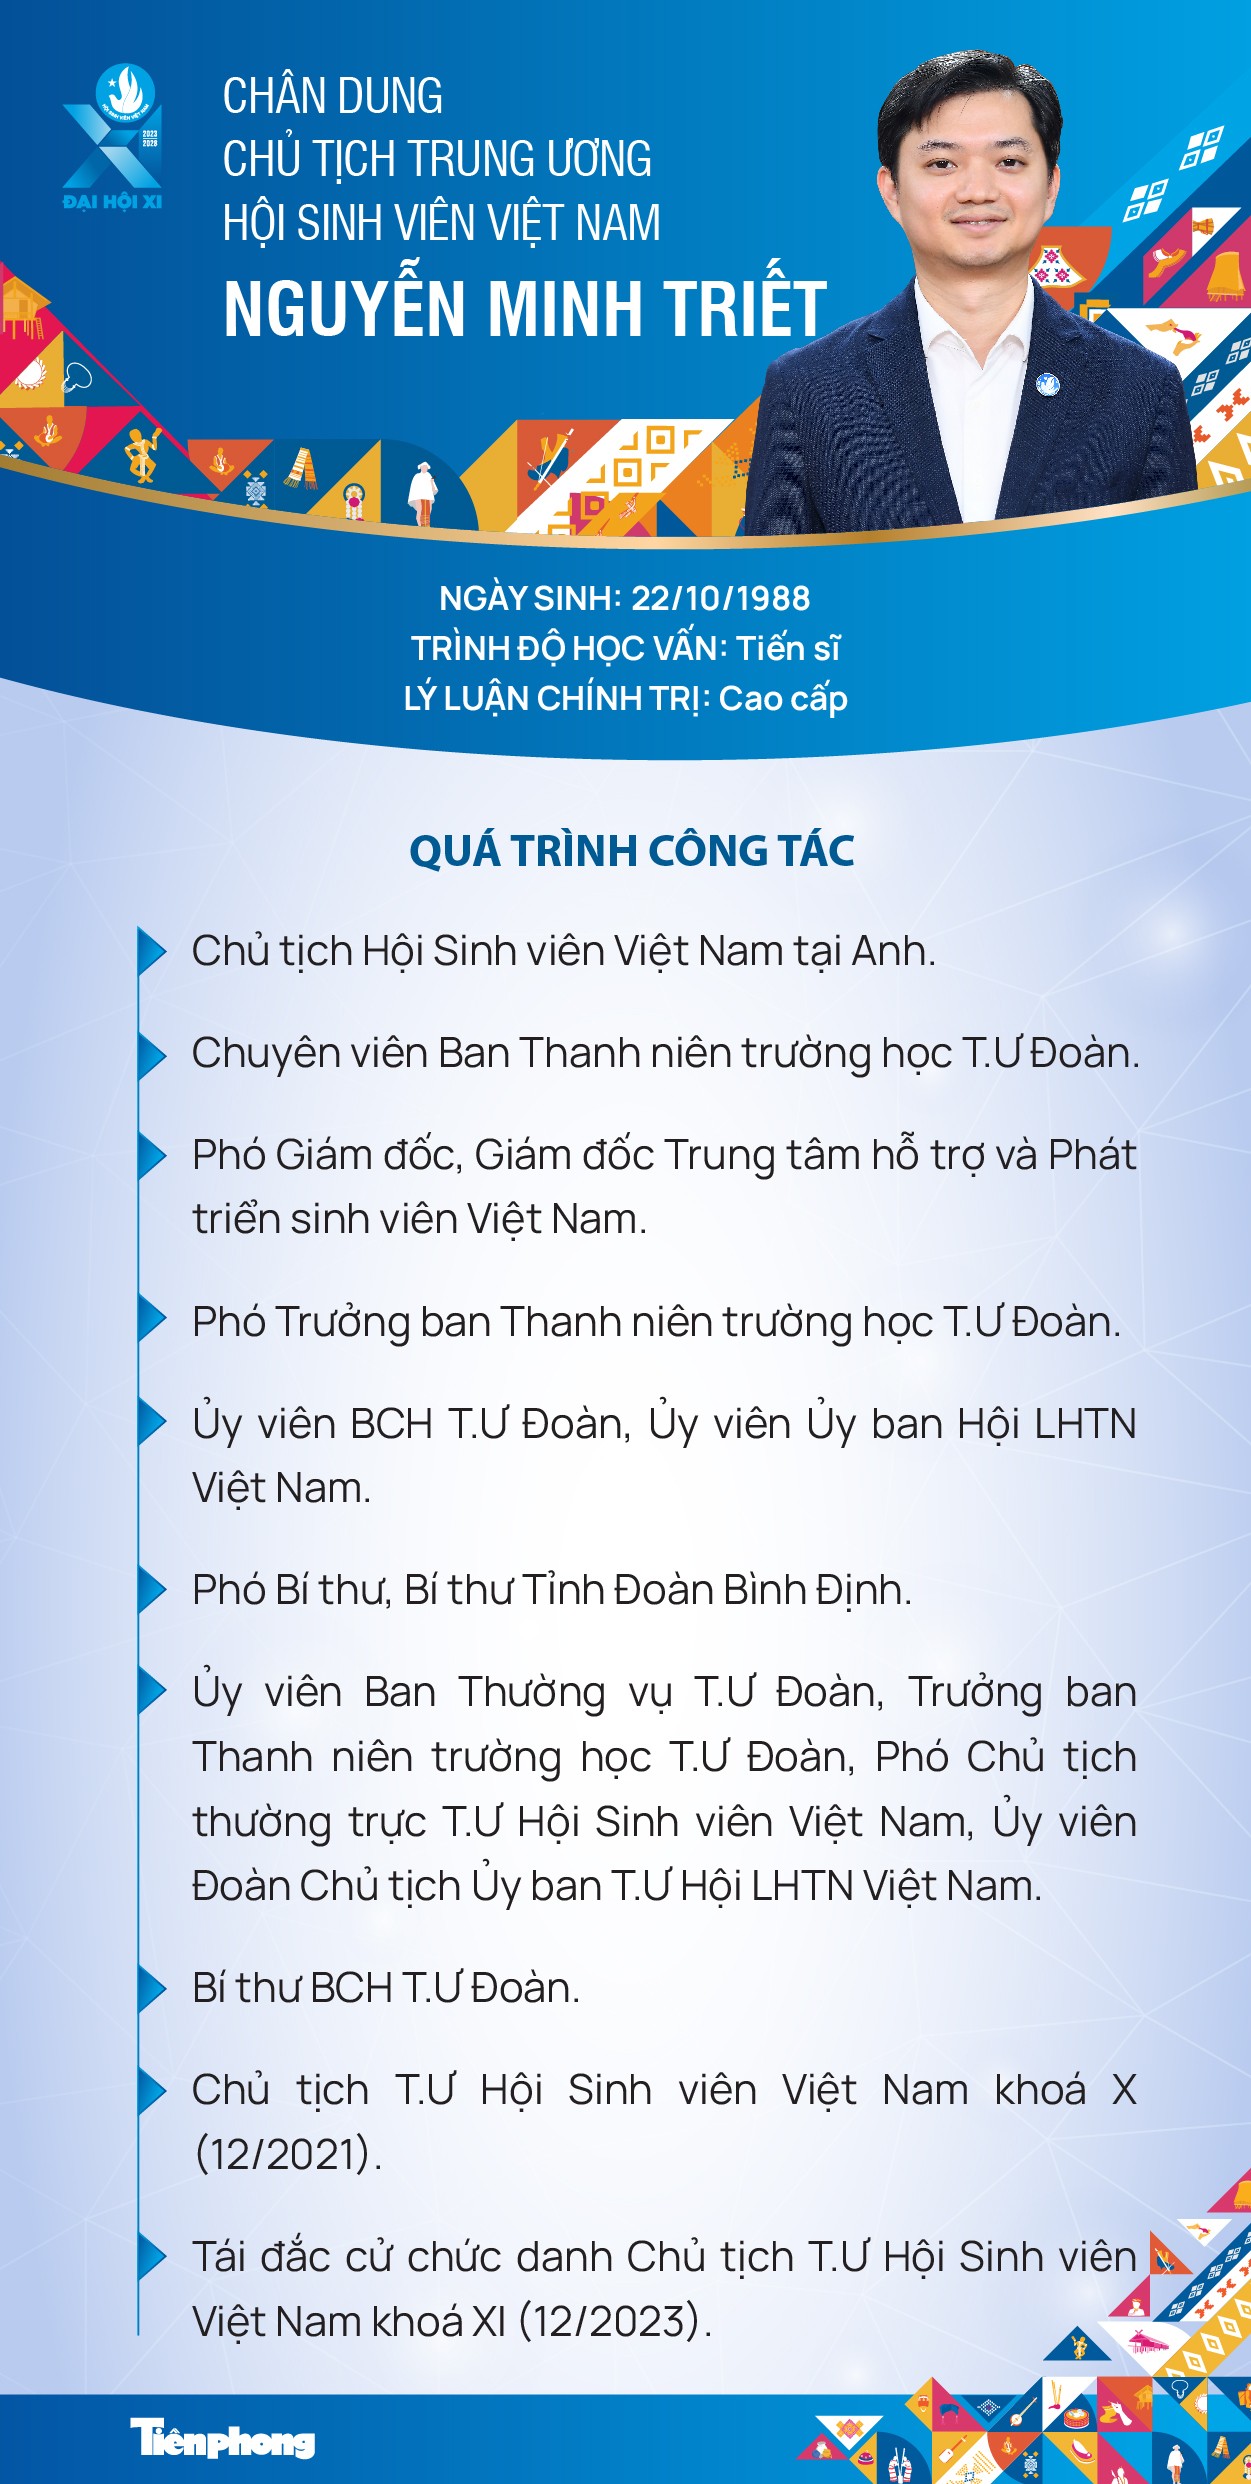 Chân dung Chủ tịch T.Ư Hội Sinh viên Việt Nam Nguyễn Minh Triết - Ảnh 1.